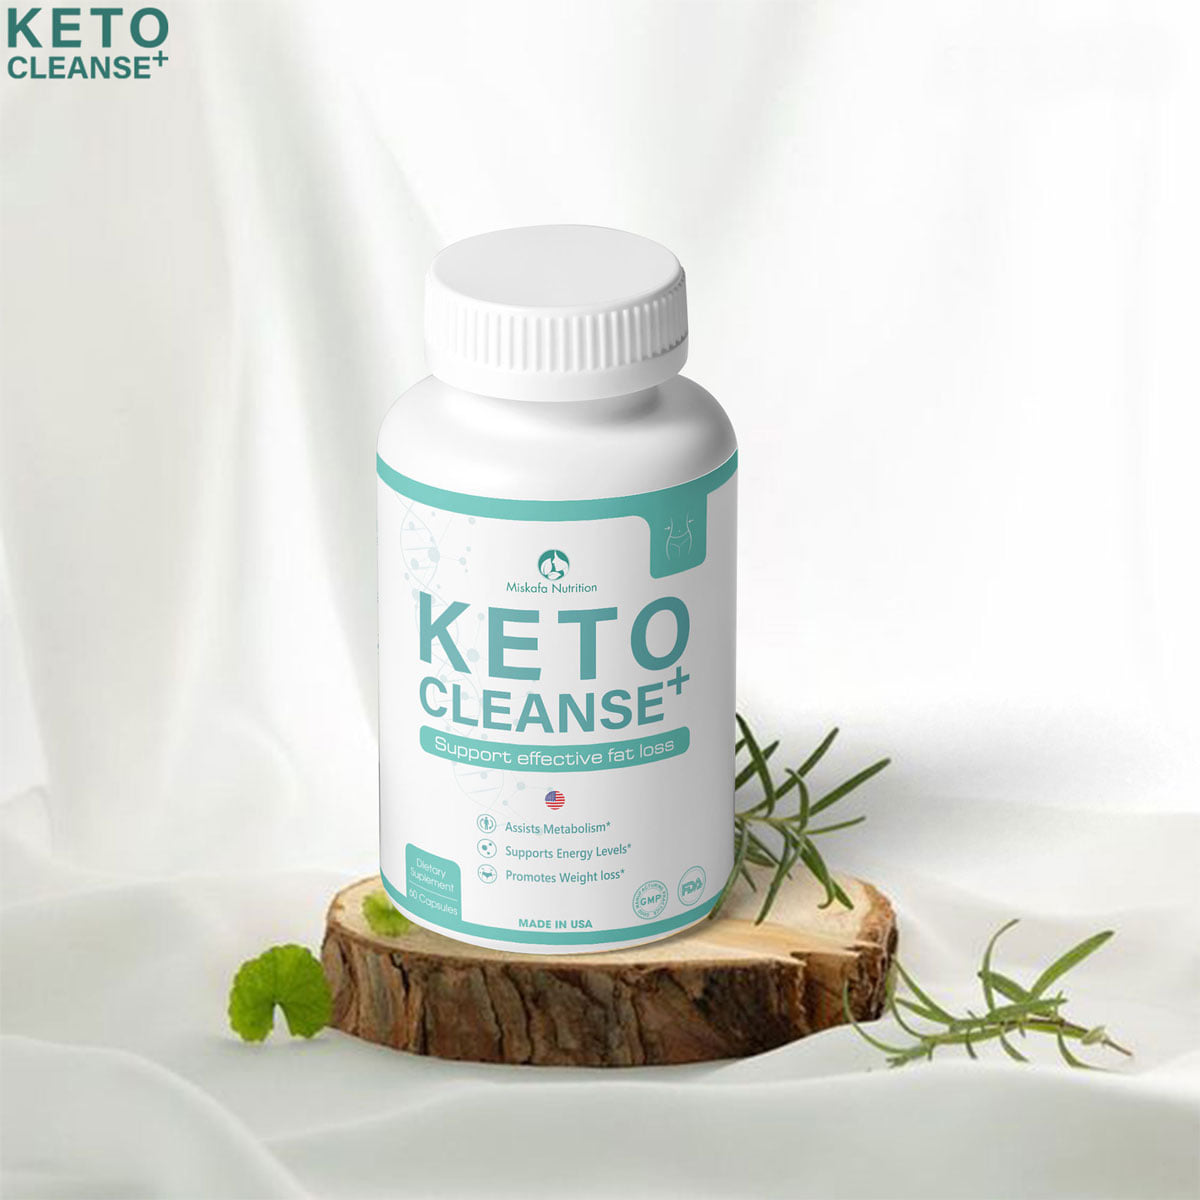 Viên uống hỗ trợ điều chỉnh cơ thể Keto Cleanse+